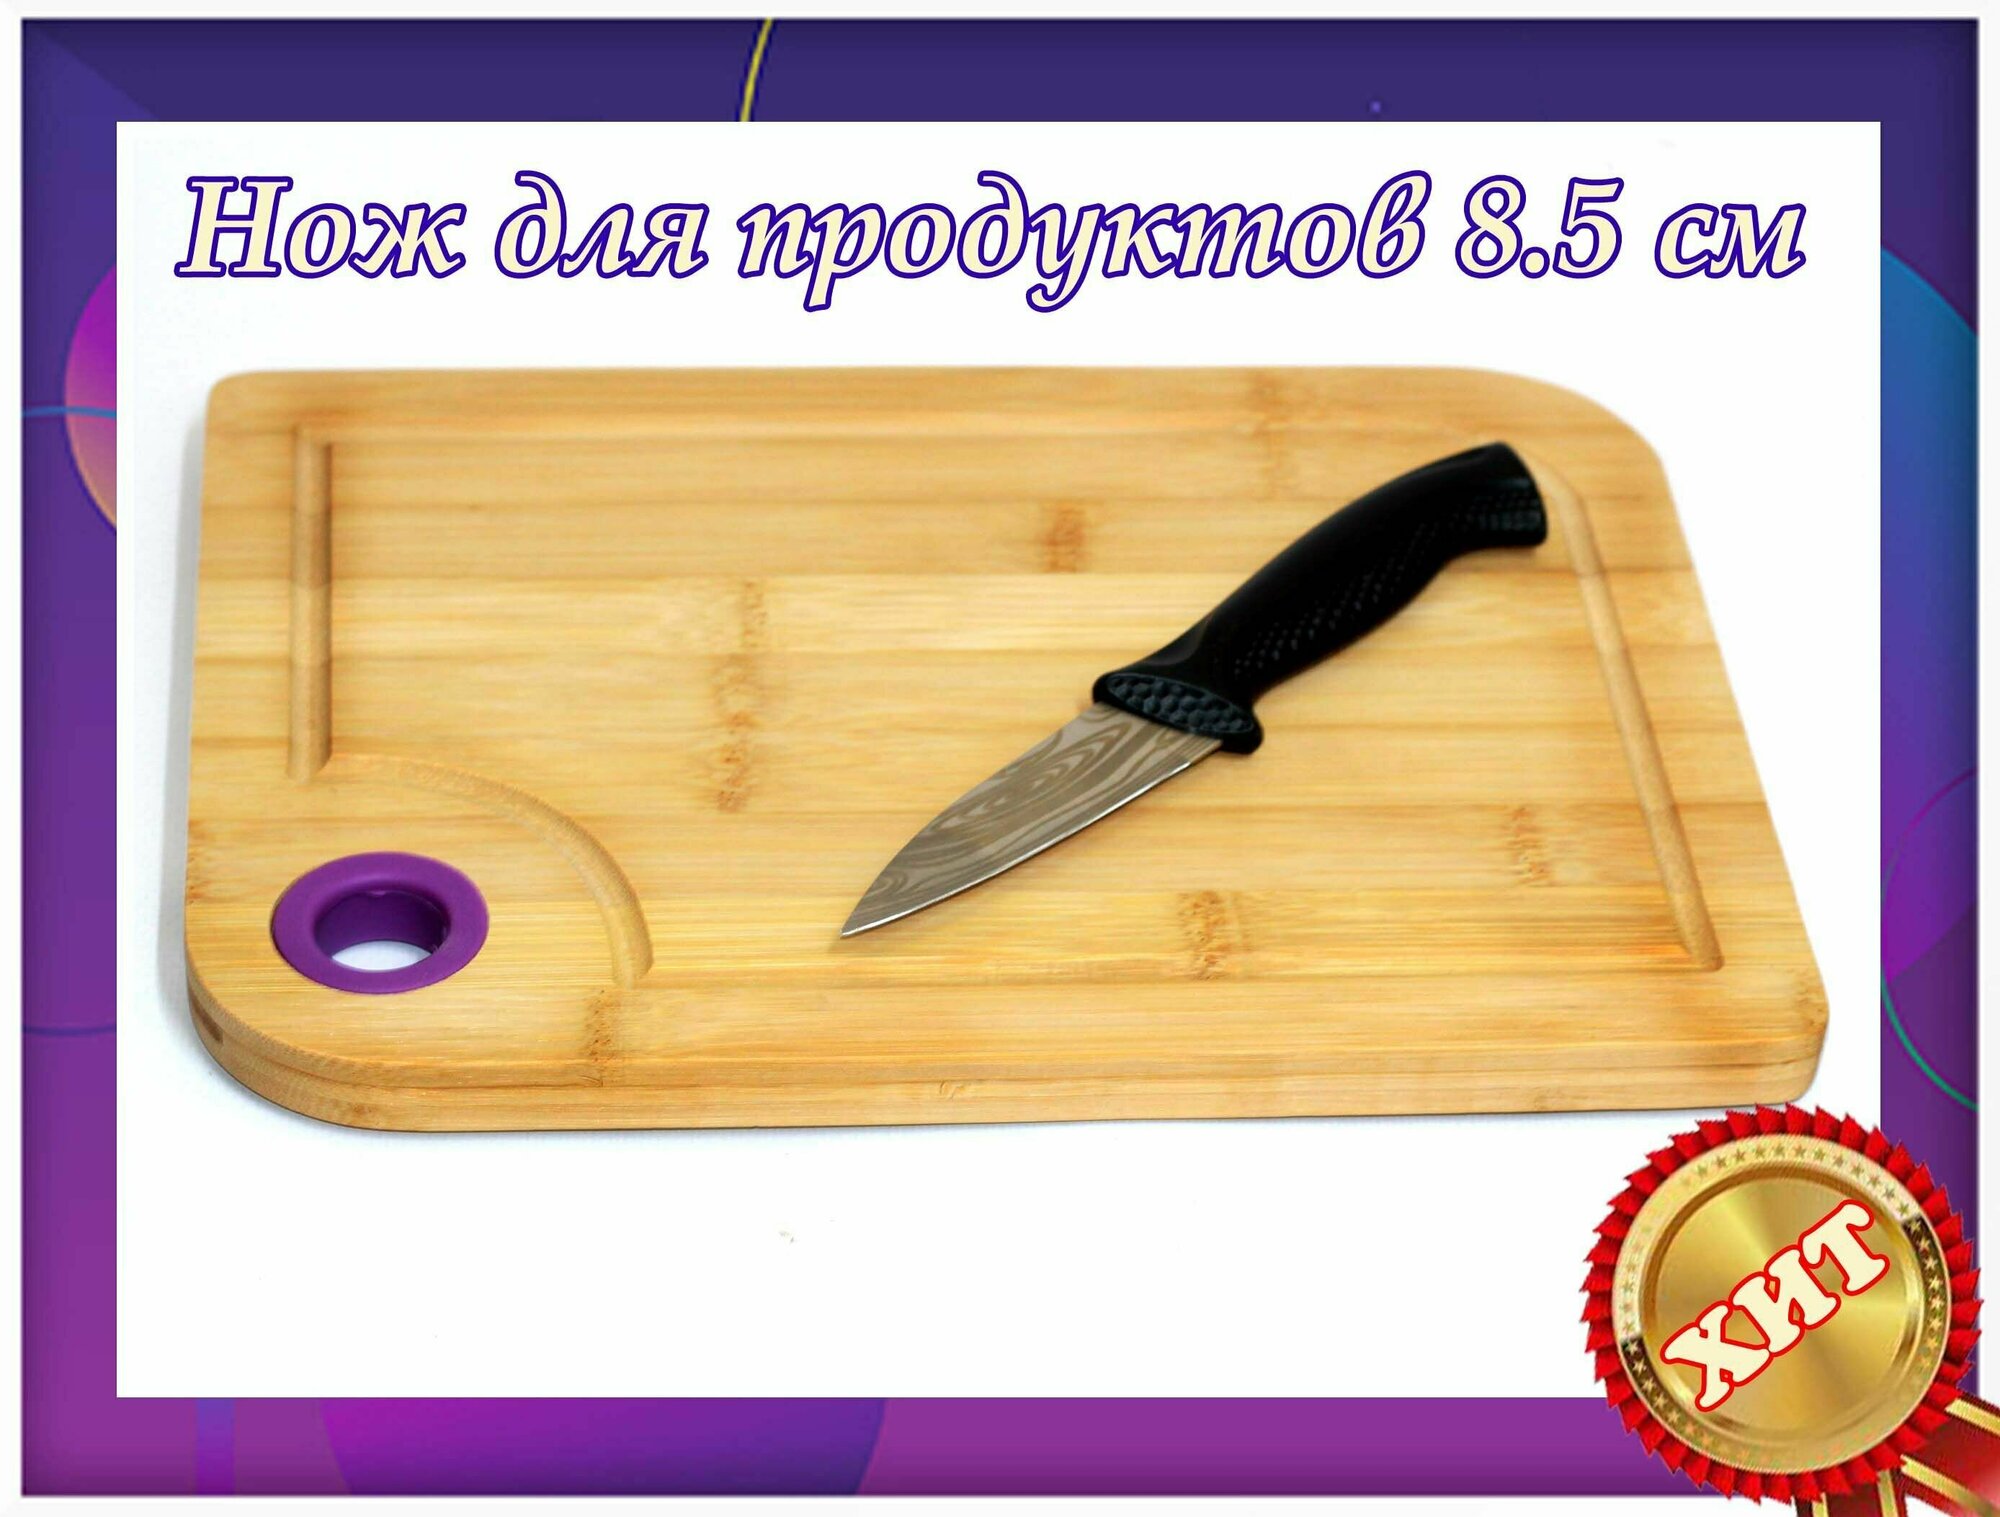 Набор кухонный нож, длина лезвия 8,5 см с разделочной доской.